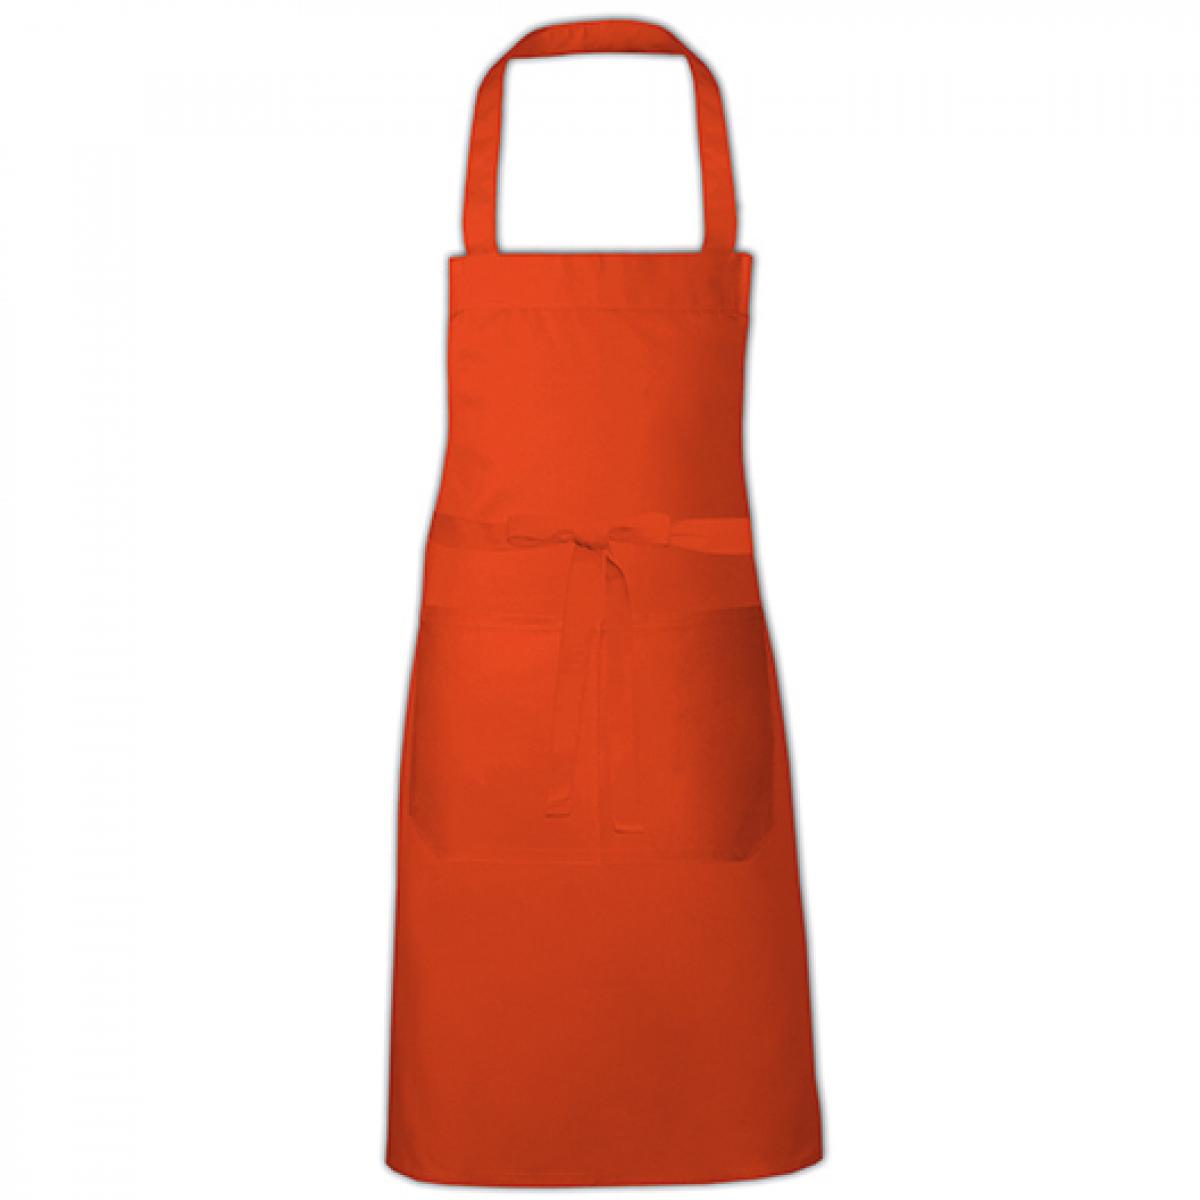 Hersteller: Link Kitchen Wear Herstellernummer: HS8073 Artikelbezeichnung: Hobby Apron - 73 x 80 cm - Waschbar bis 60 °C Farbe: Orange